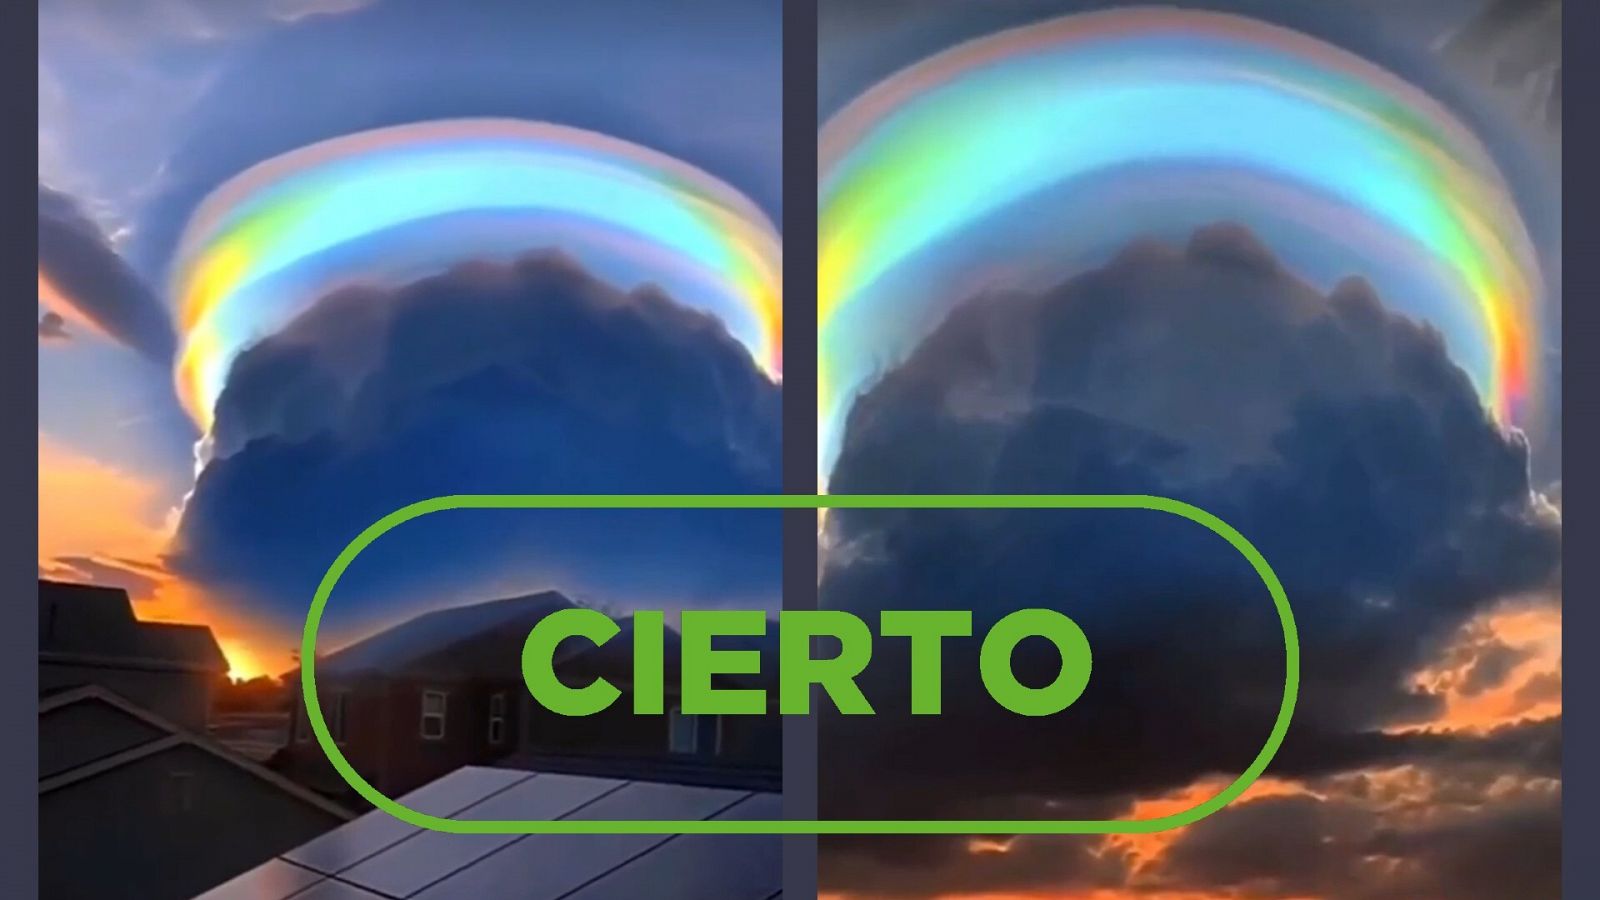 Imágenes del vídeo que muestra una nube iridiscente con colores 'arcoíris'. Con el sello cierto.